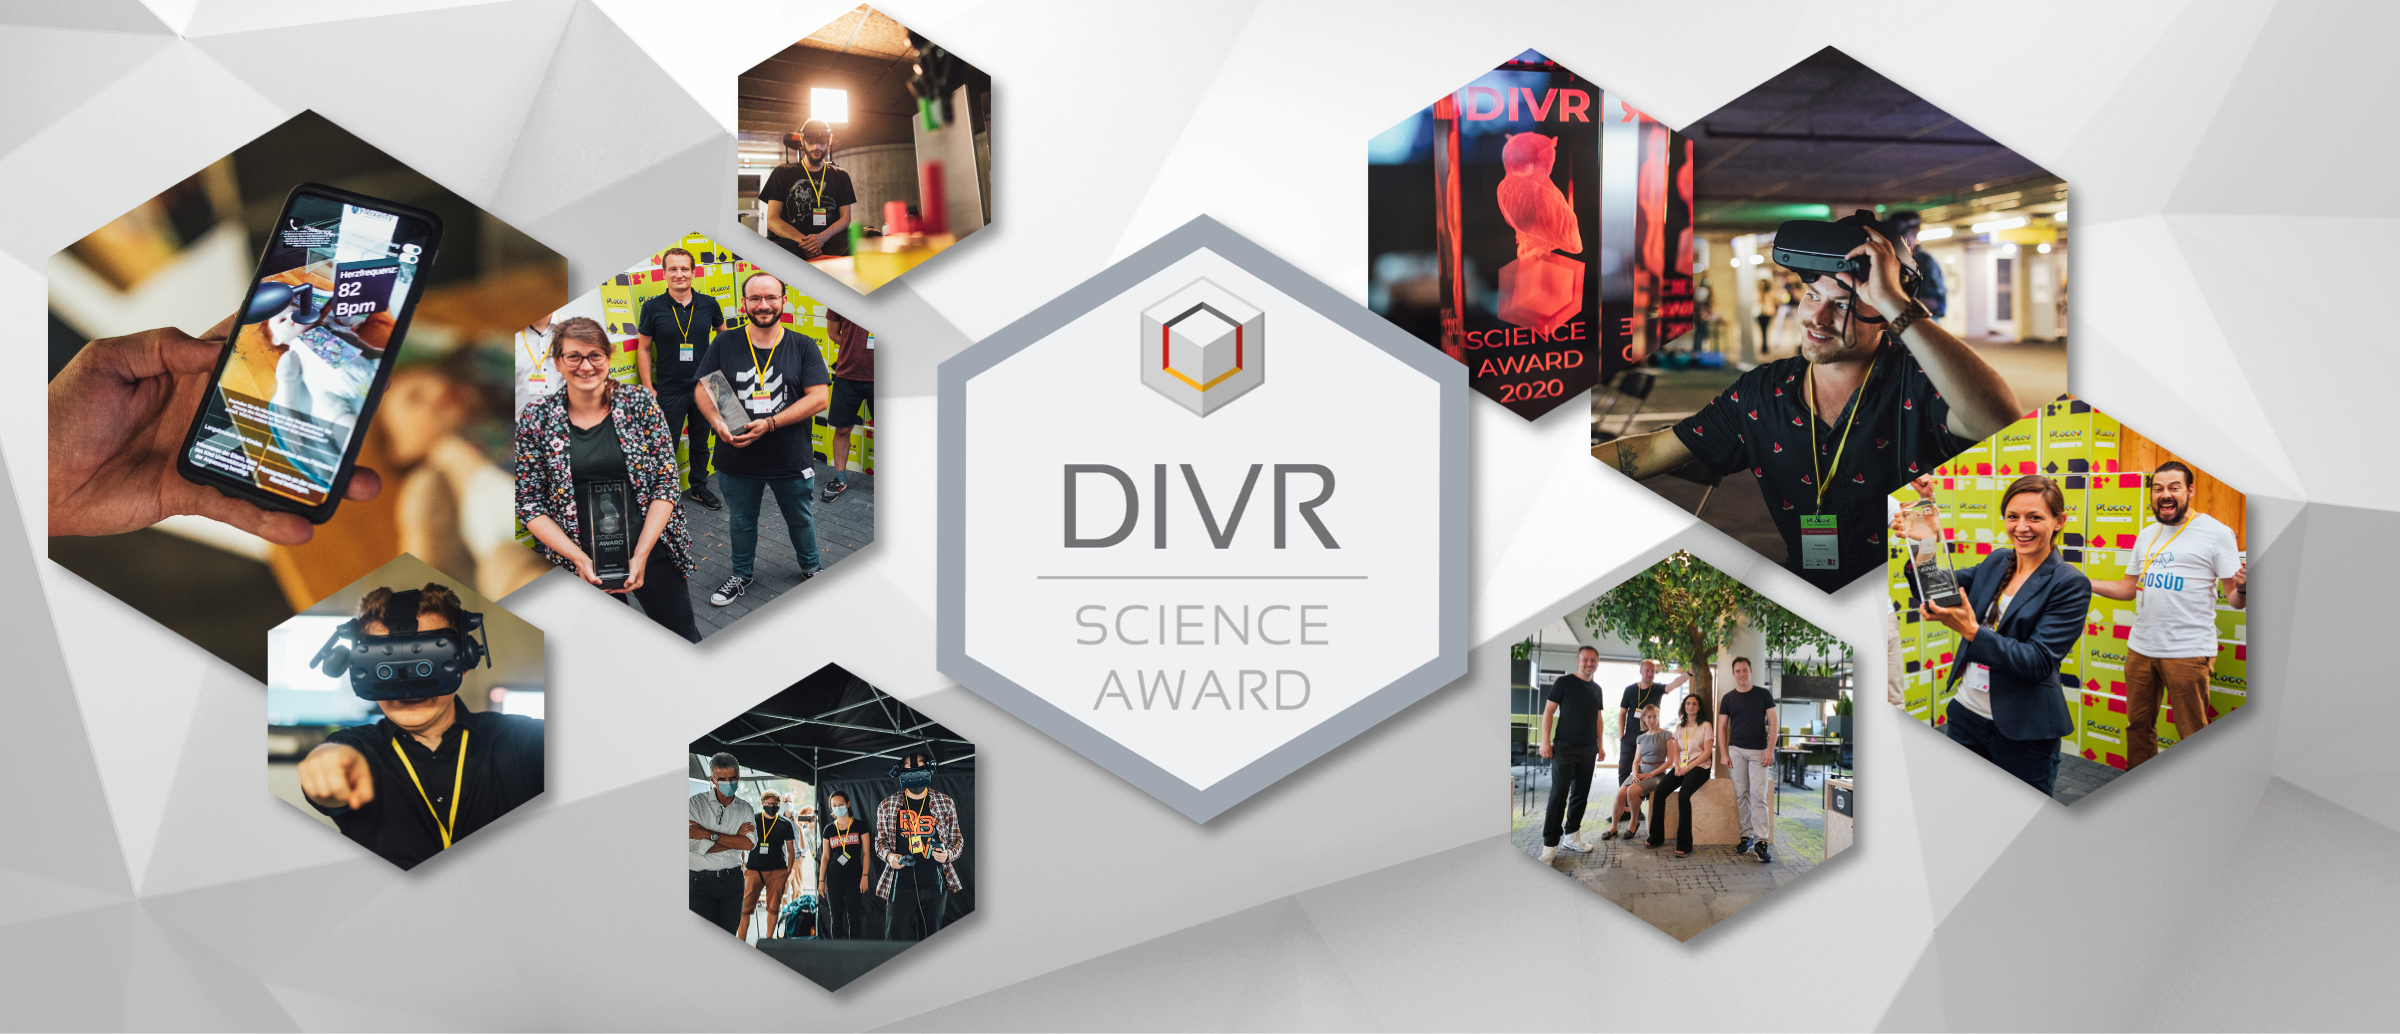 DIVR Science Award Header